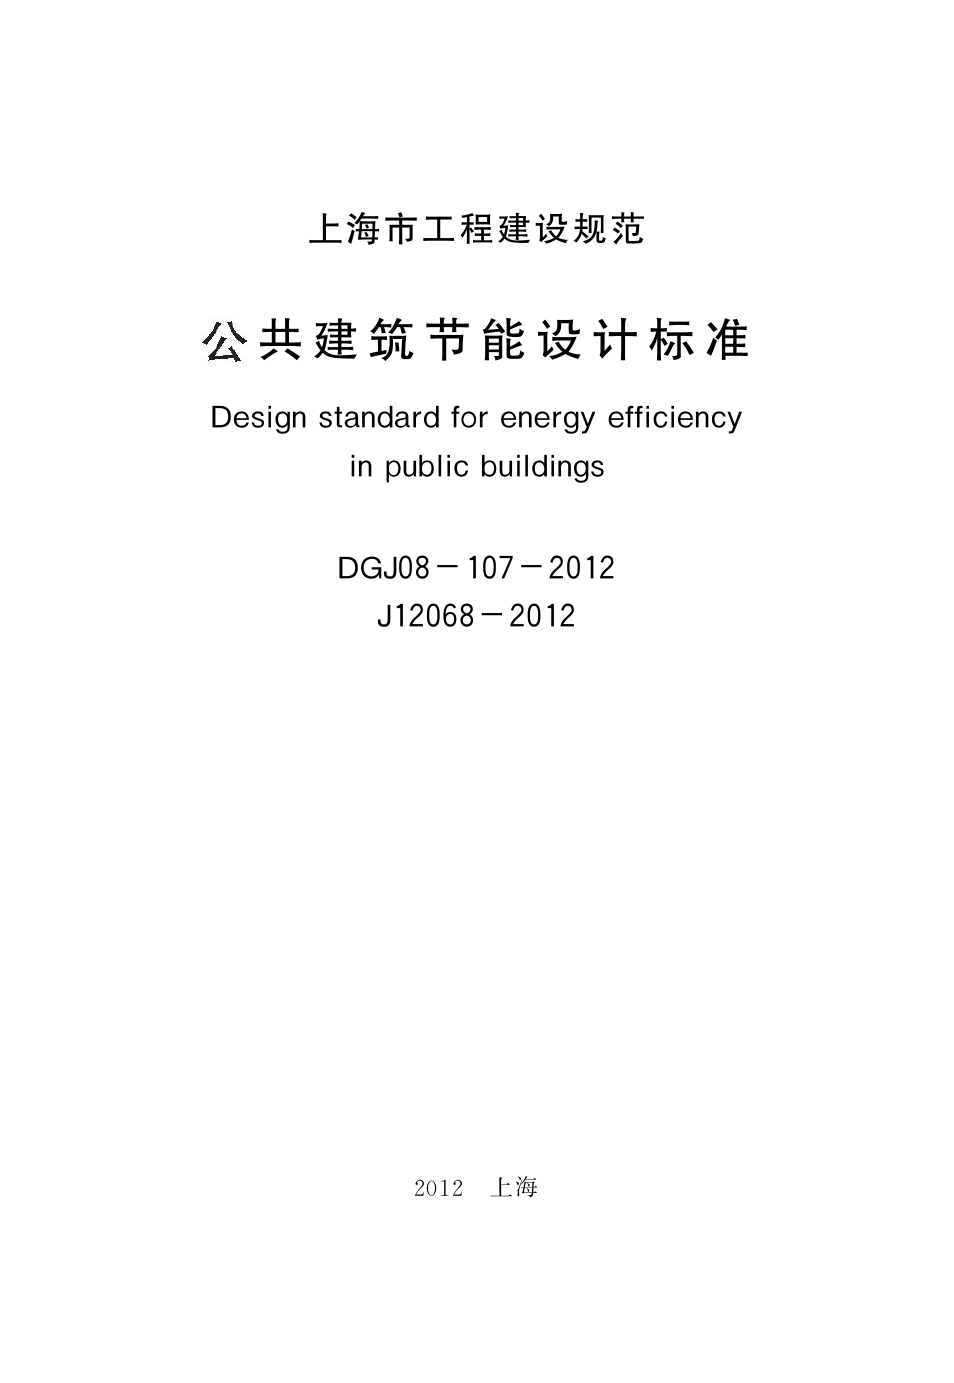 上海市《公共建筑节能设计标准》 DGJ08-107-2012